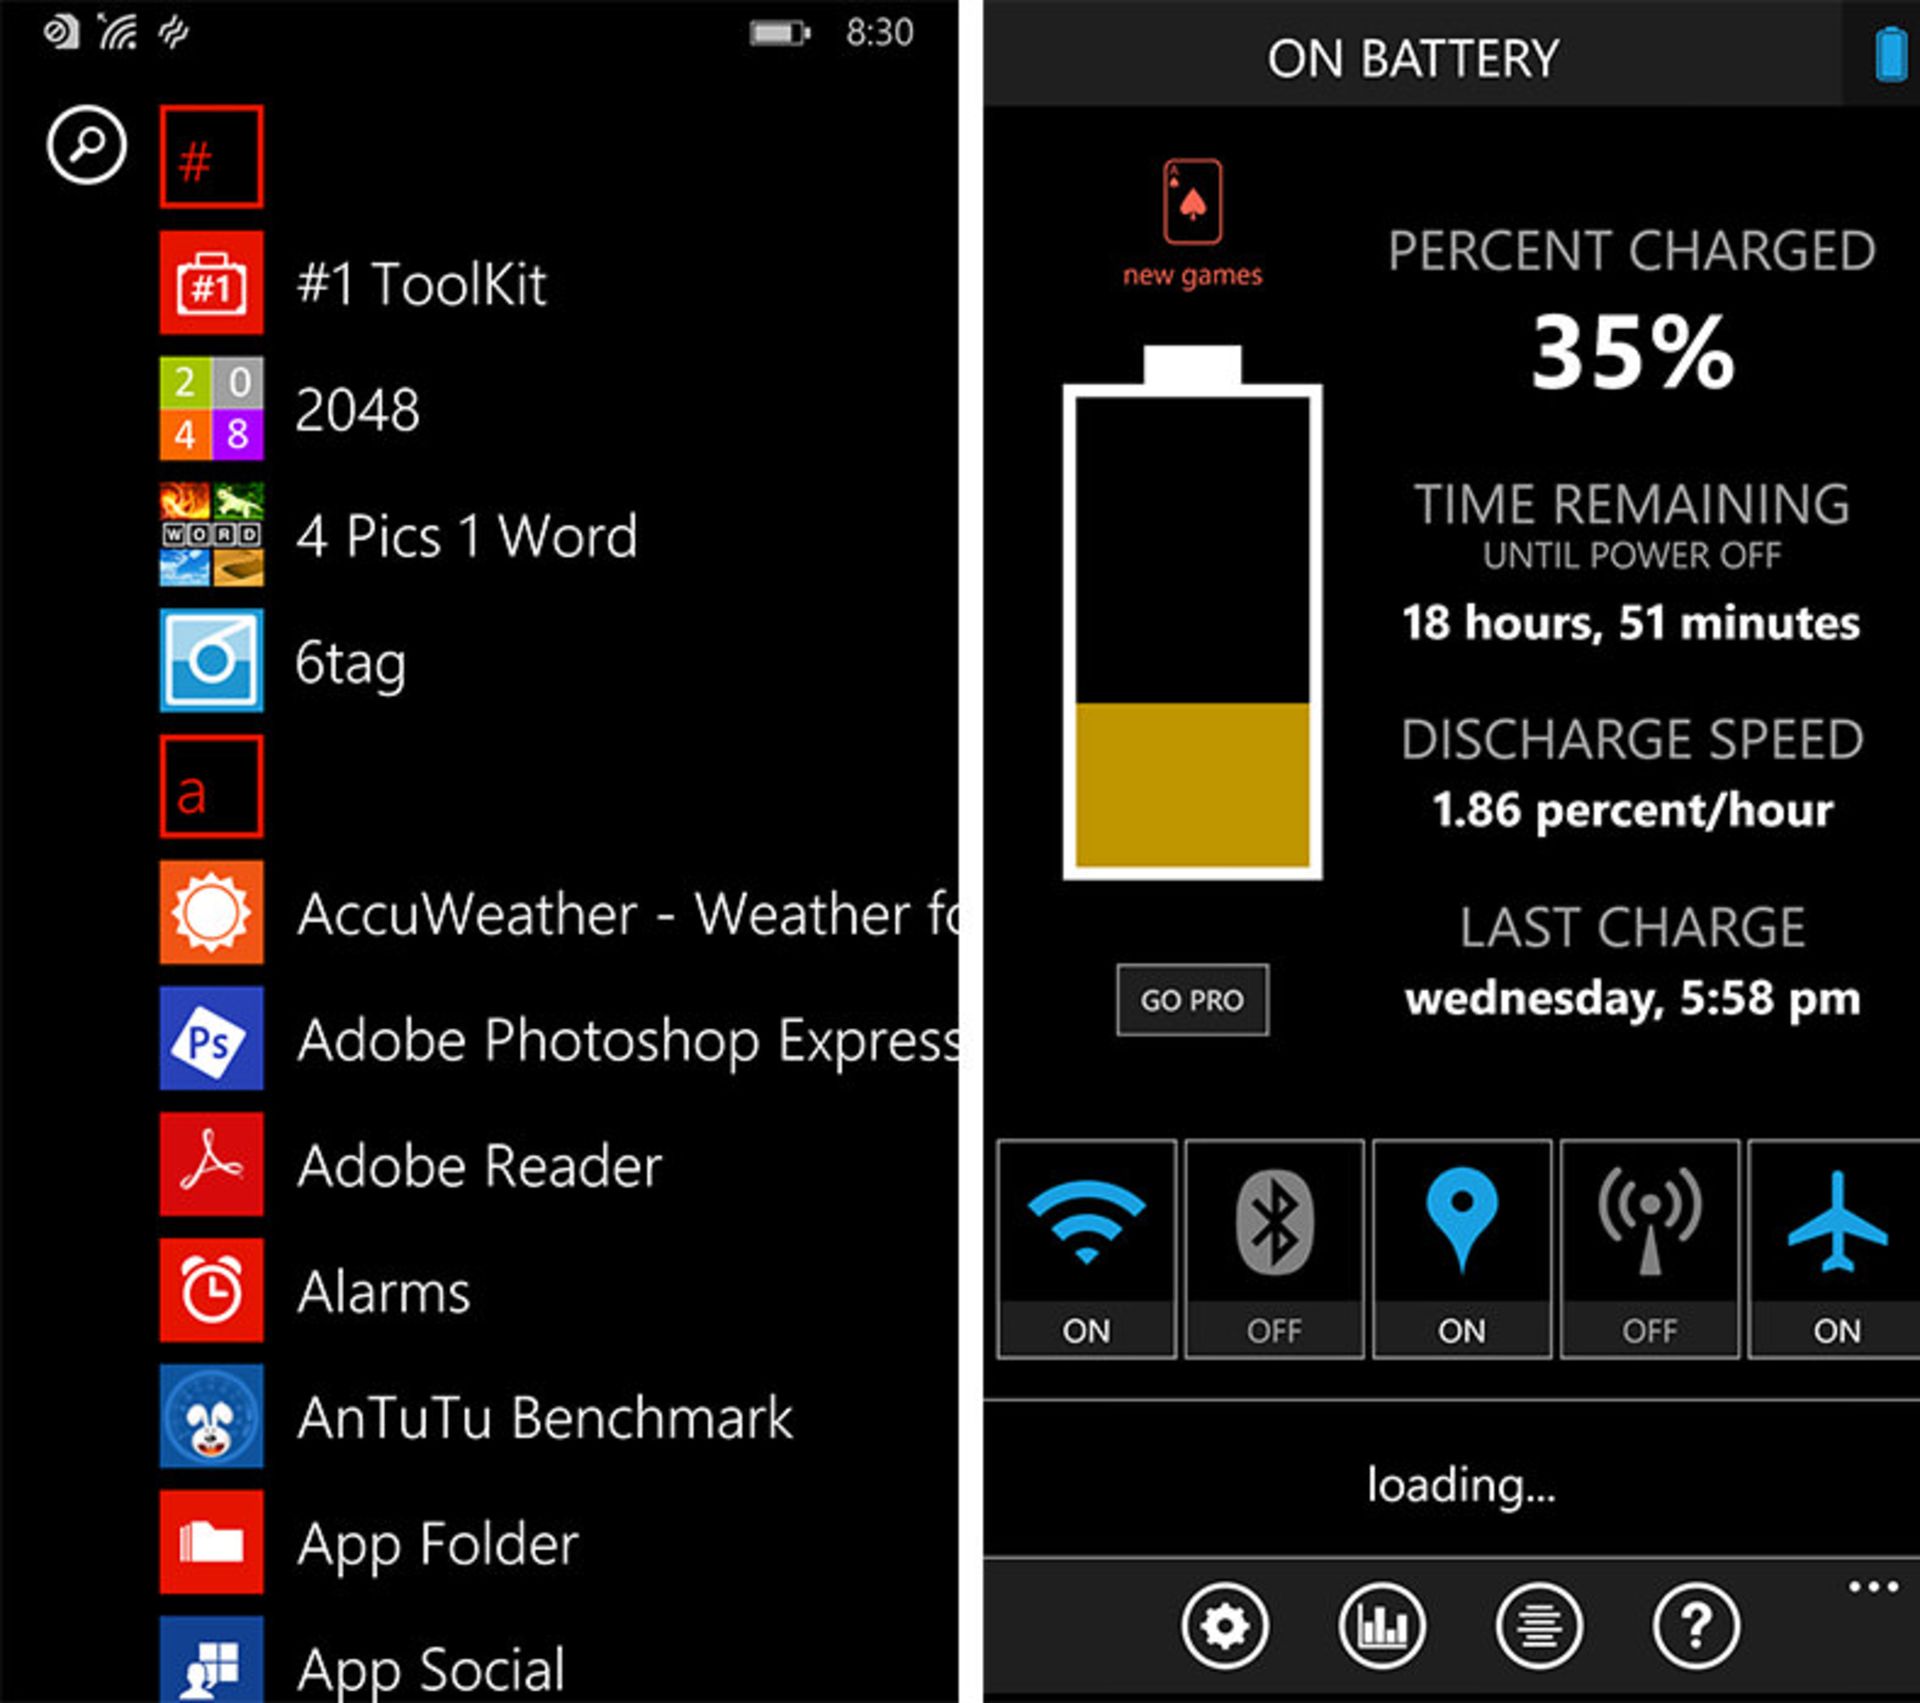 بررسی لومیا 930 نوکیا (Lumia 930)